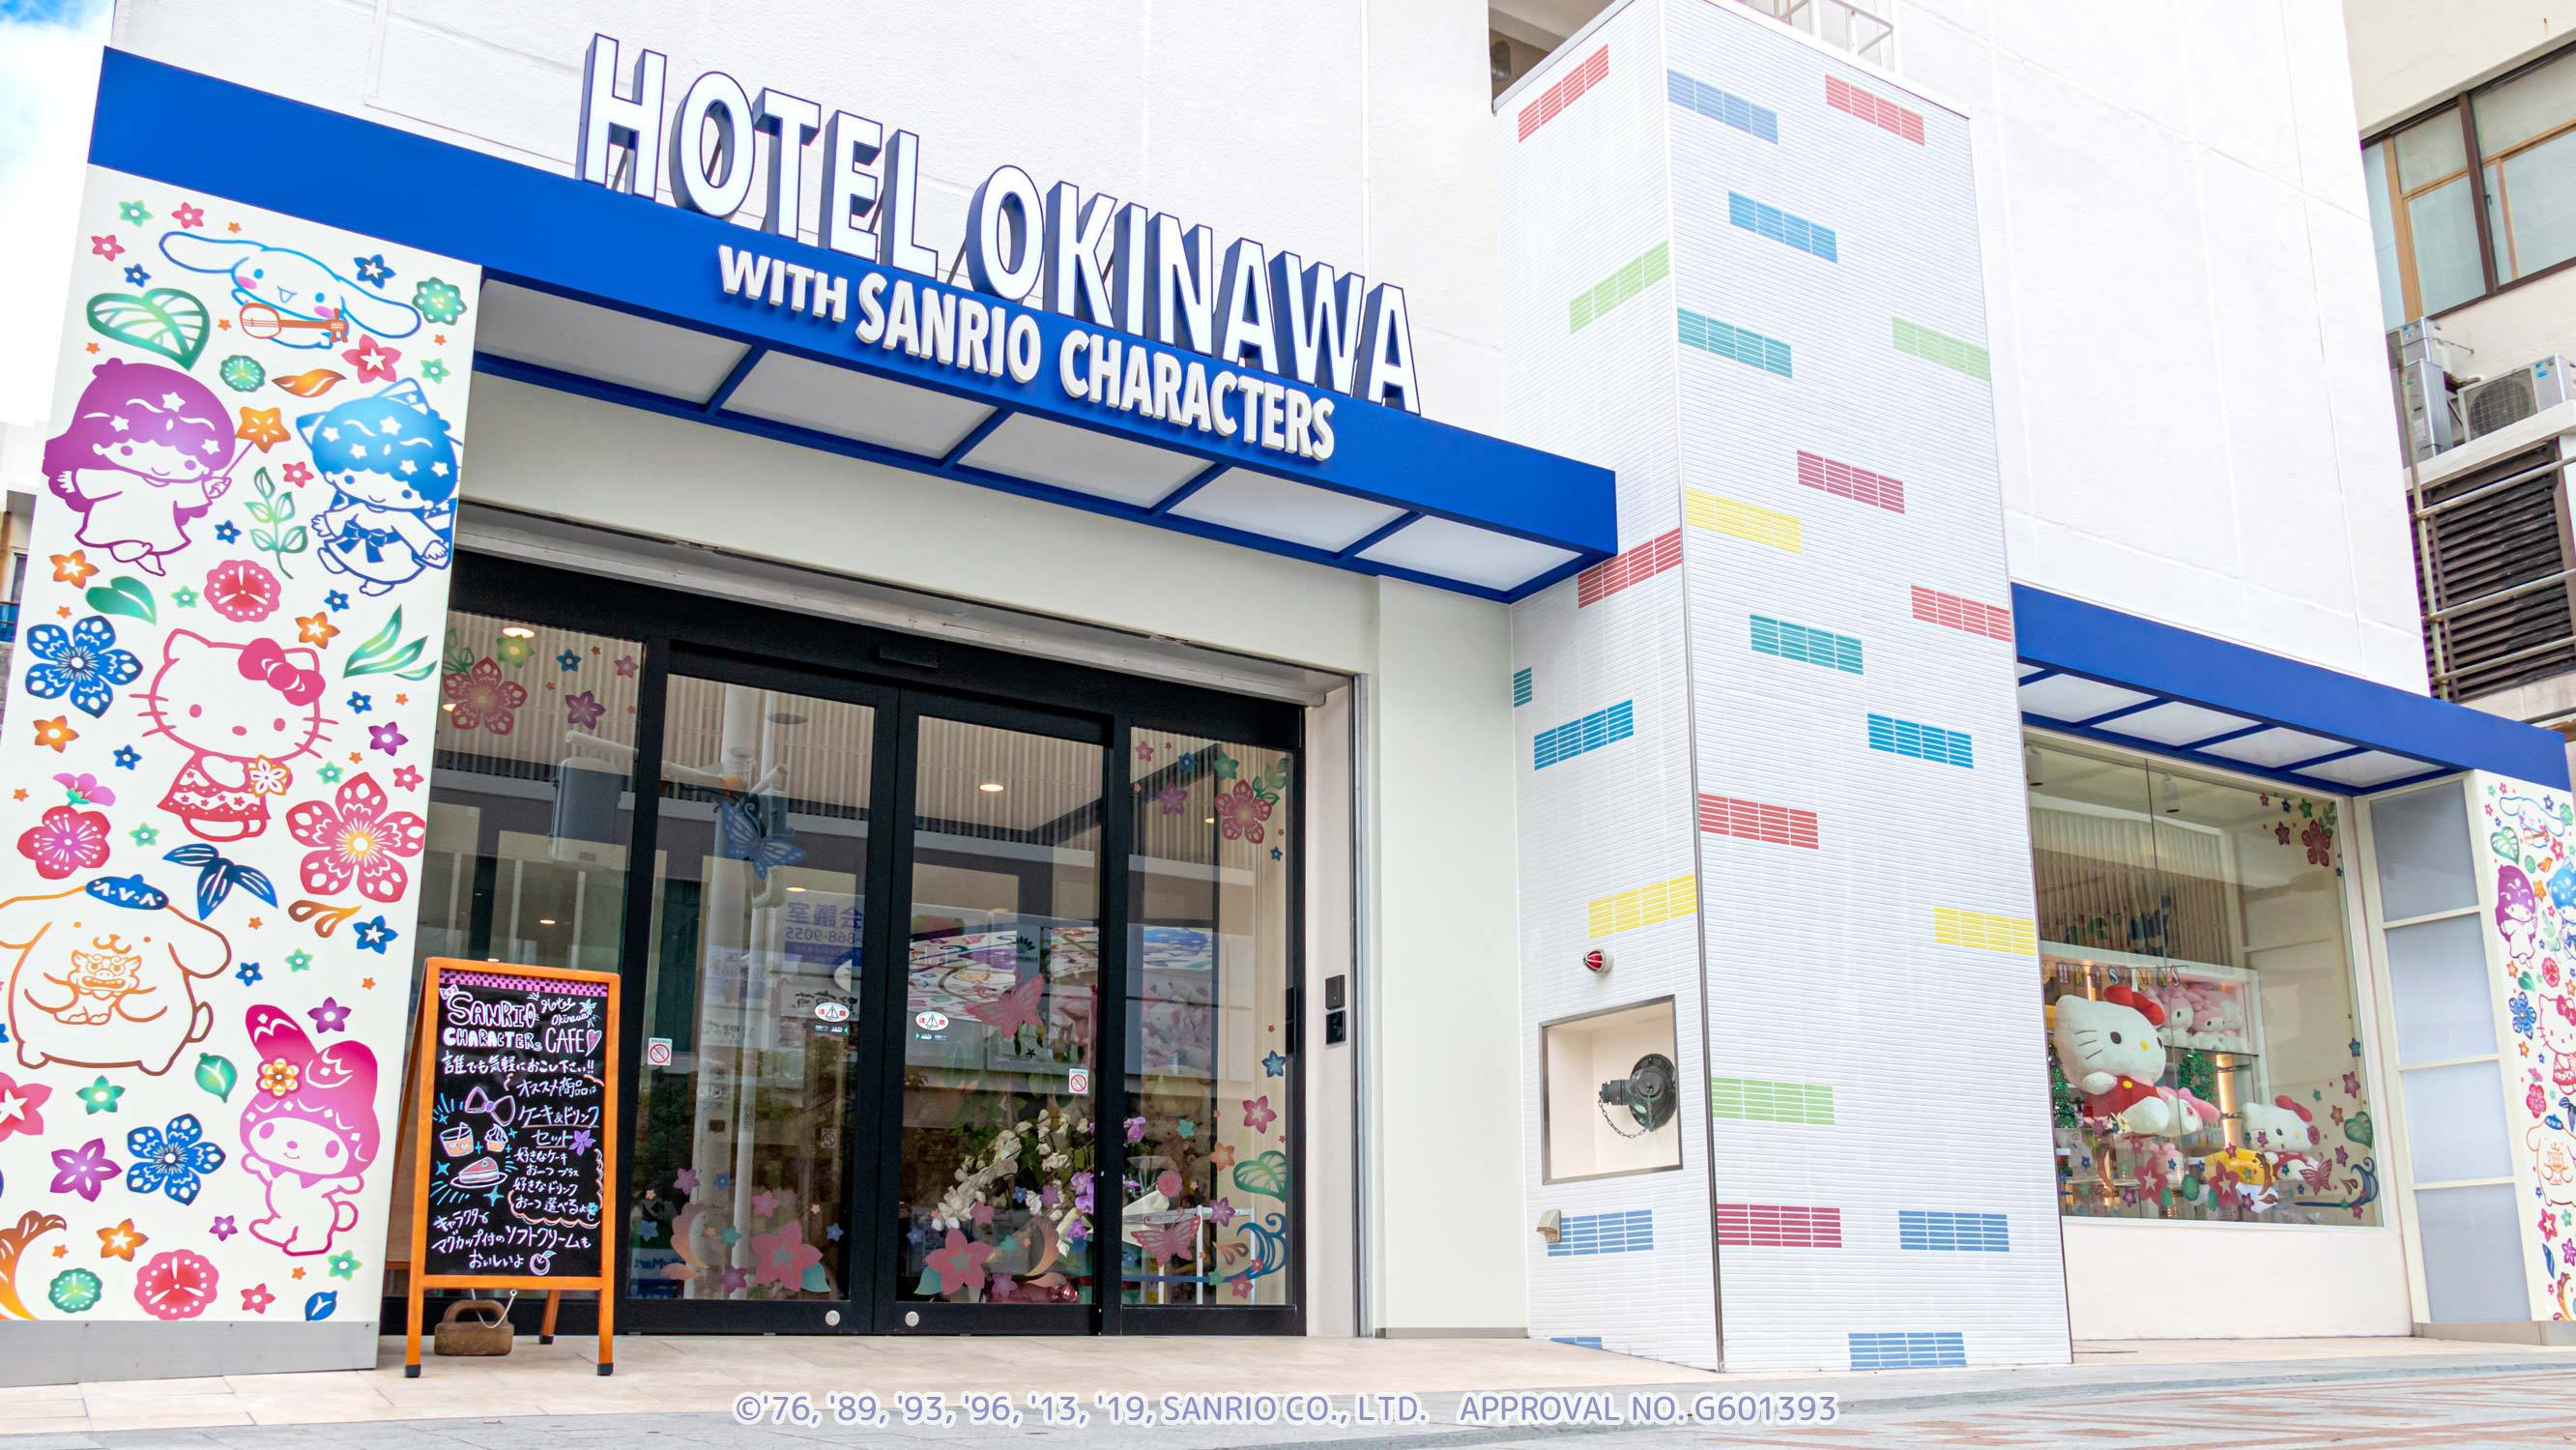 ホテル沖縄 with サンリオキャラクターズ image